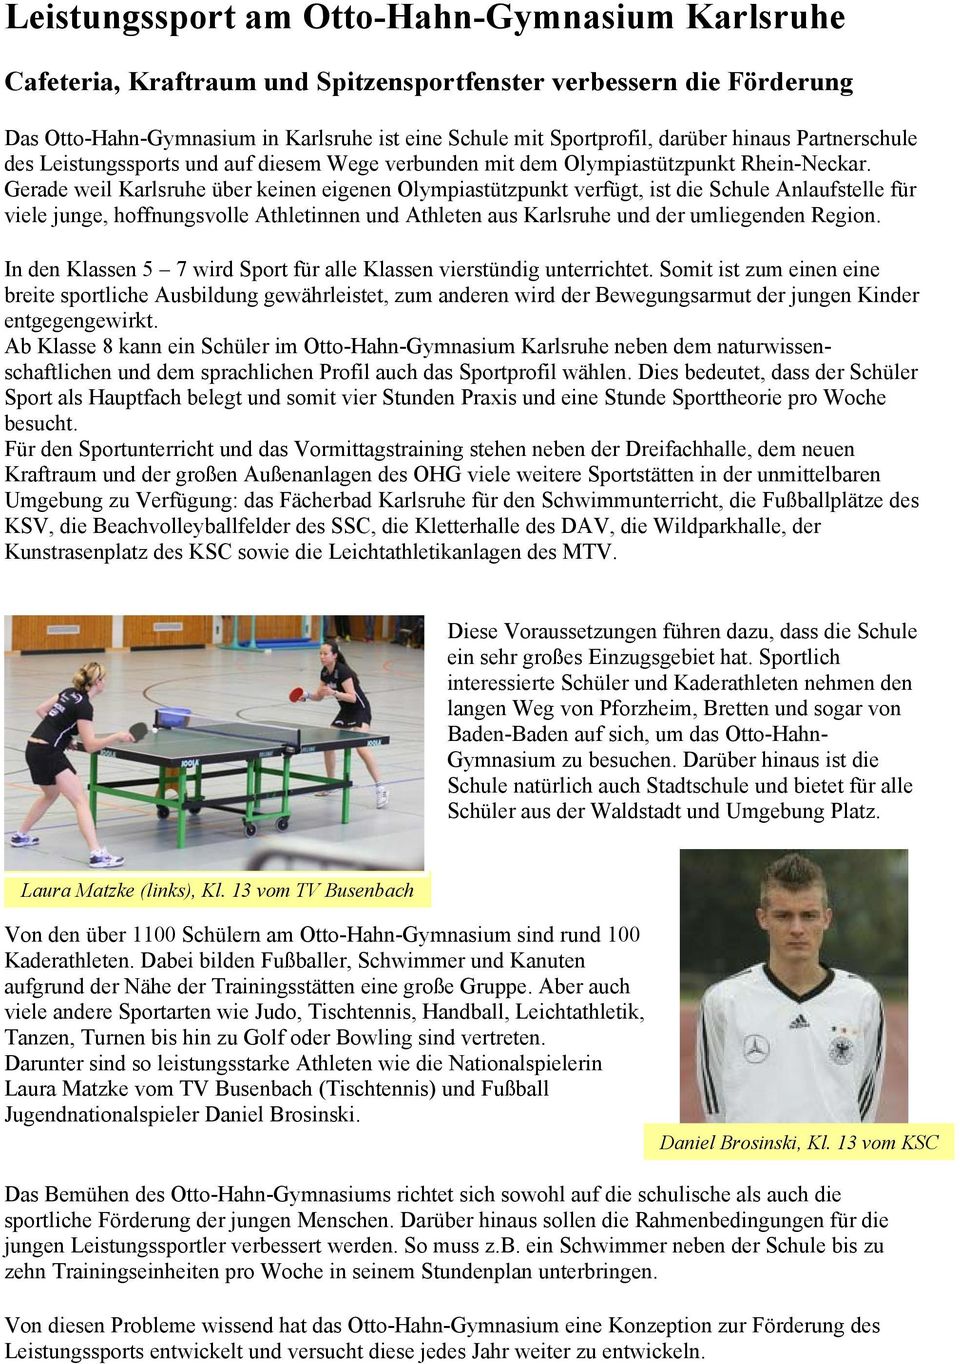 Gerade weil Karlsruhe über keinen eigenen Olympiastützpunkt verfügt, ist die Schule Anlaufstelle für viele junge, hoffnungsvolle Athletinnen und Athleten aus Karlsruhe und der umliegenden Region.